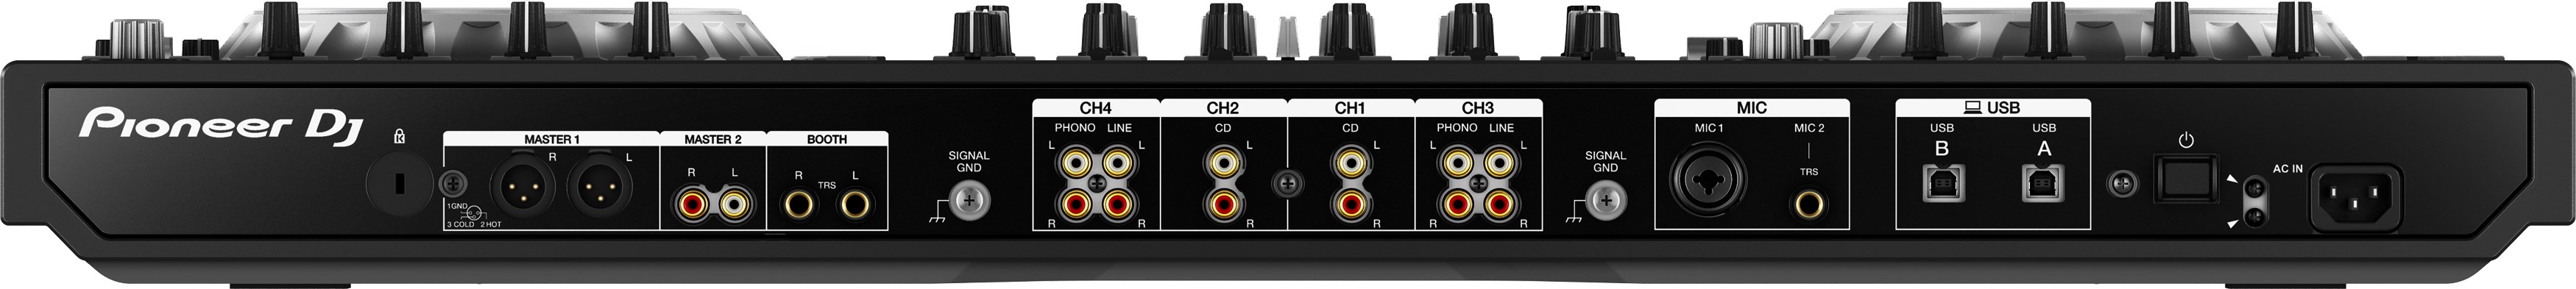 Pioneer Dj Ddj-sz2 - USB DJ-Controller - Variation 3